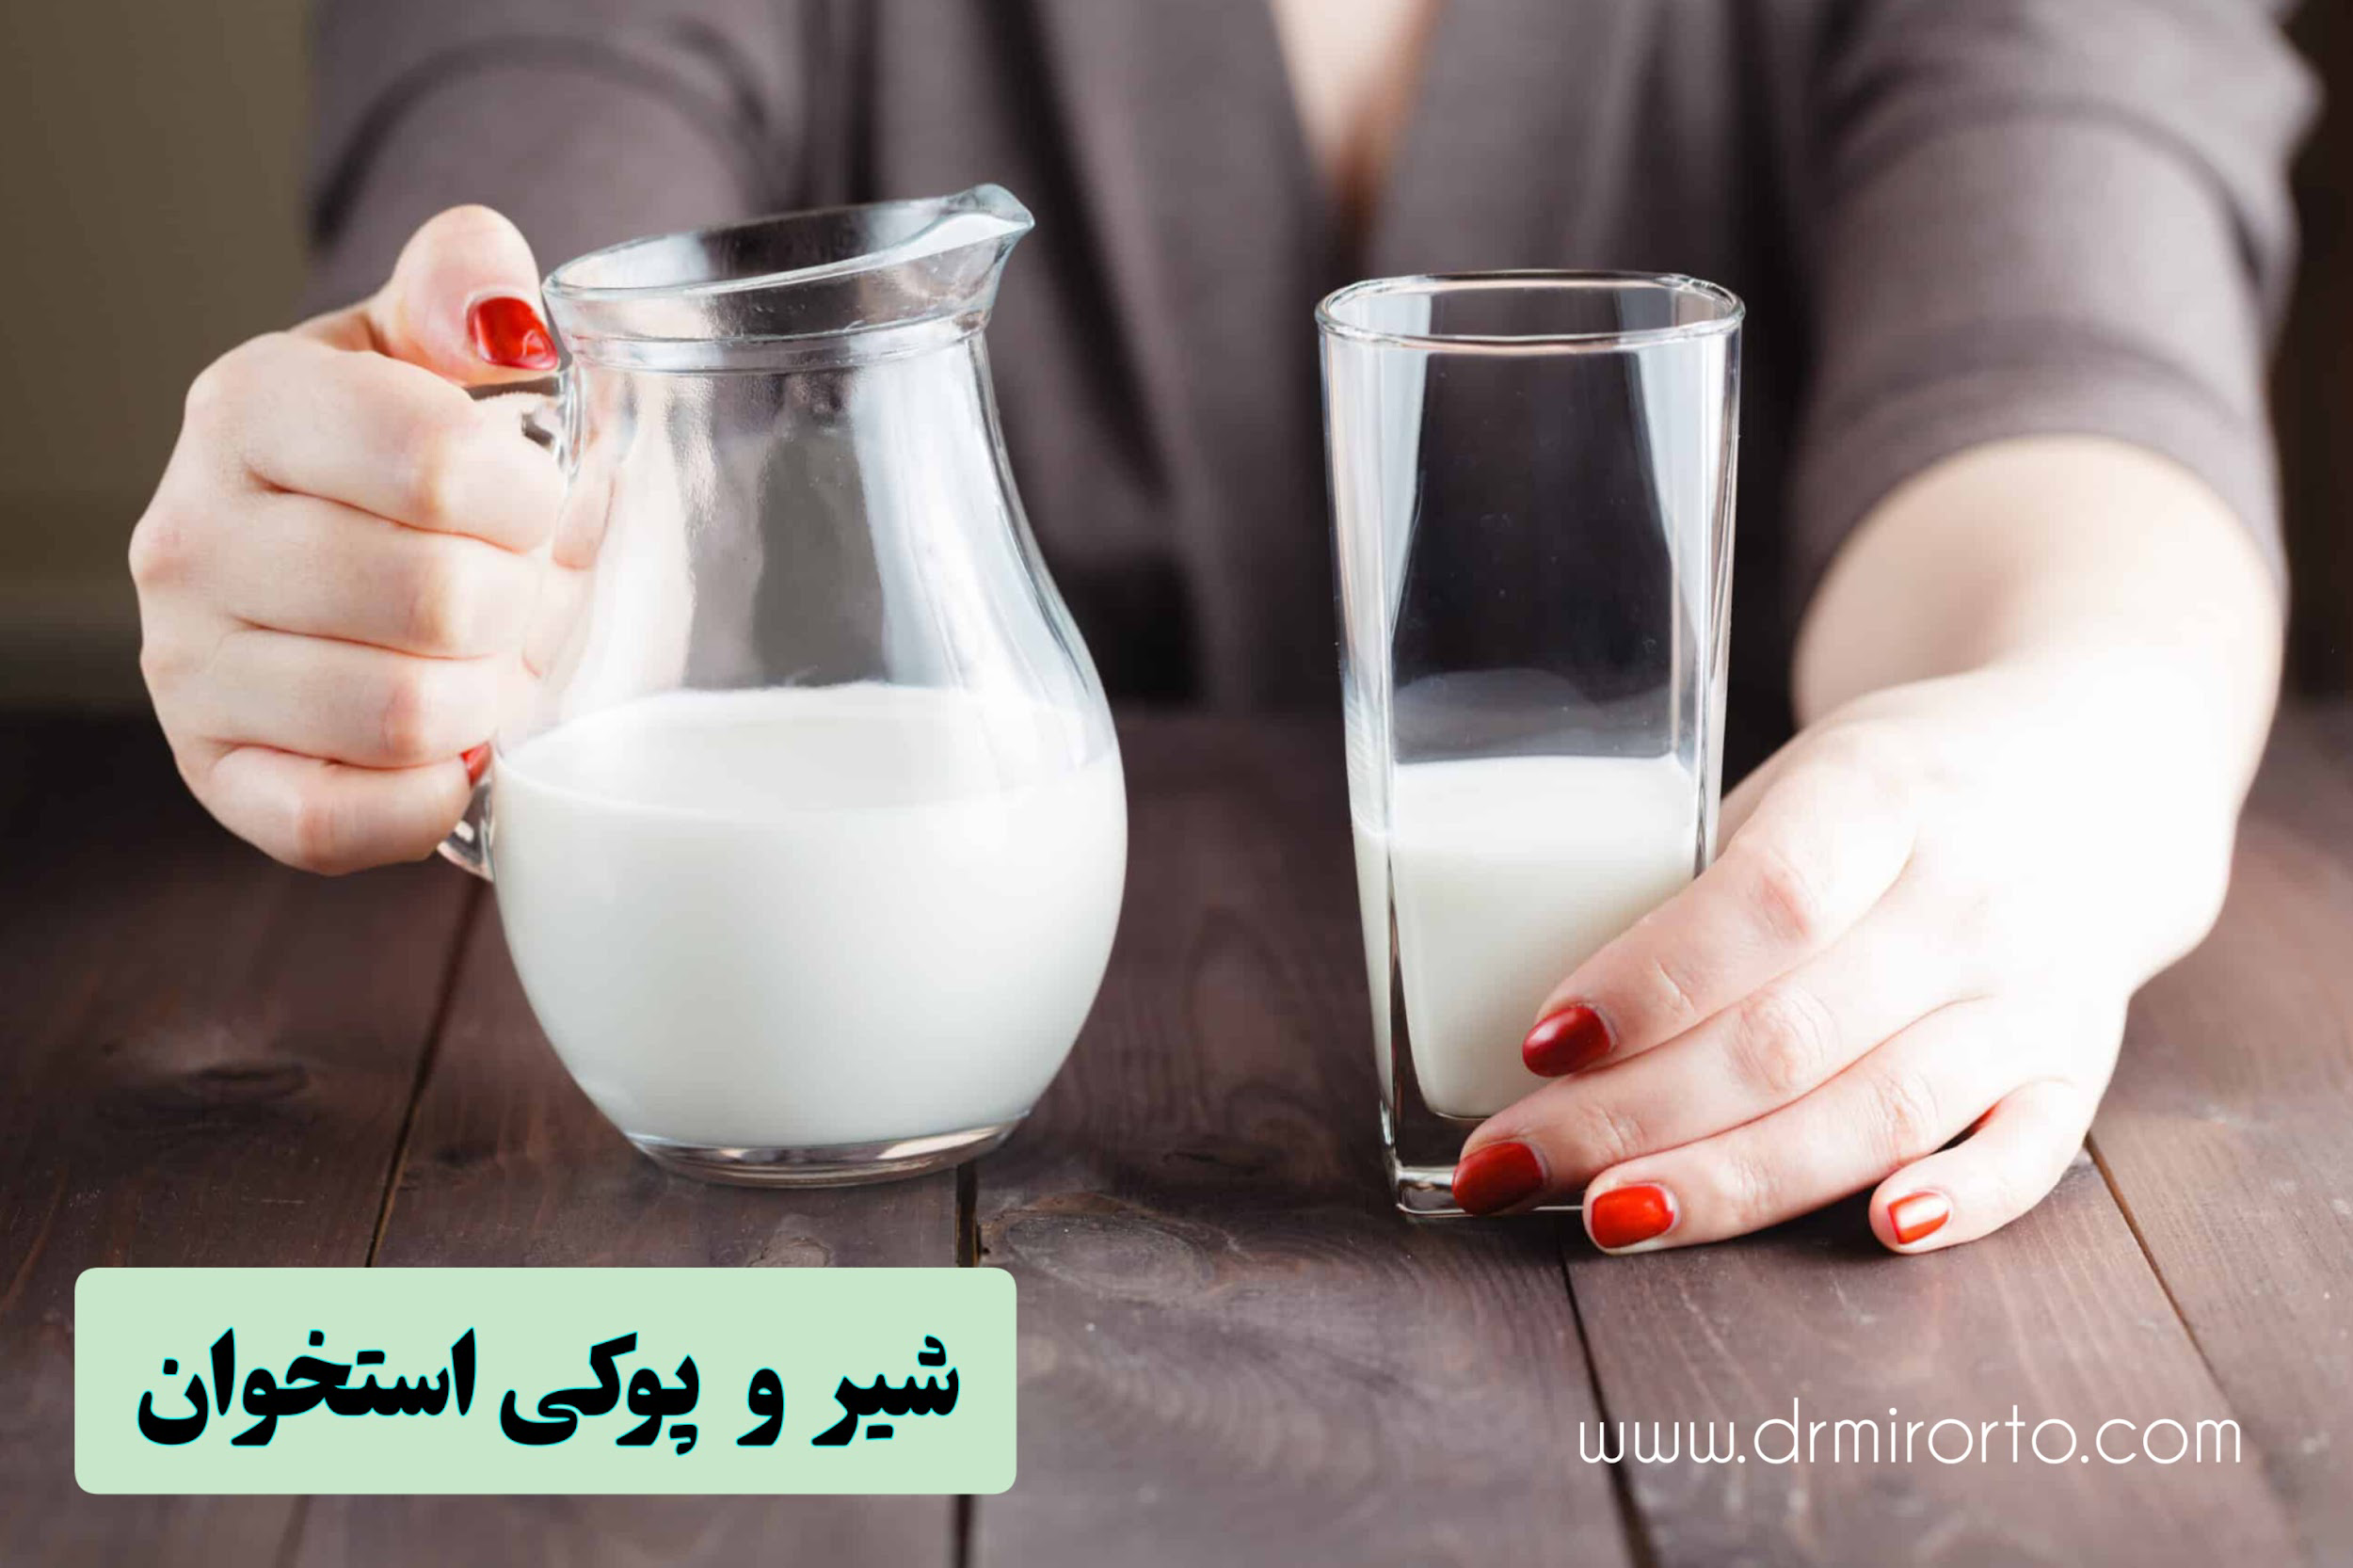 اهمیت مصرف شیر و پوکی استخوان در کیفیت زندگی افراد